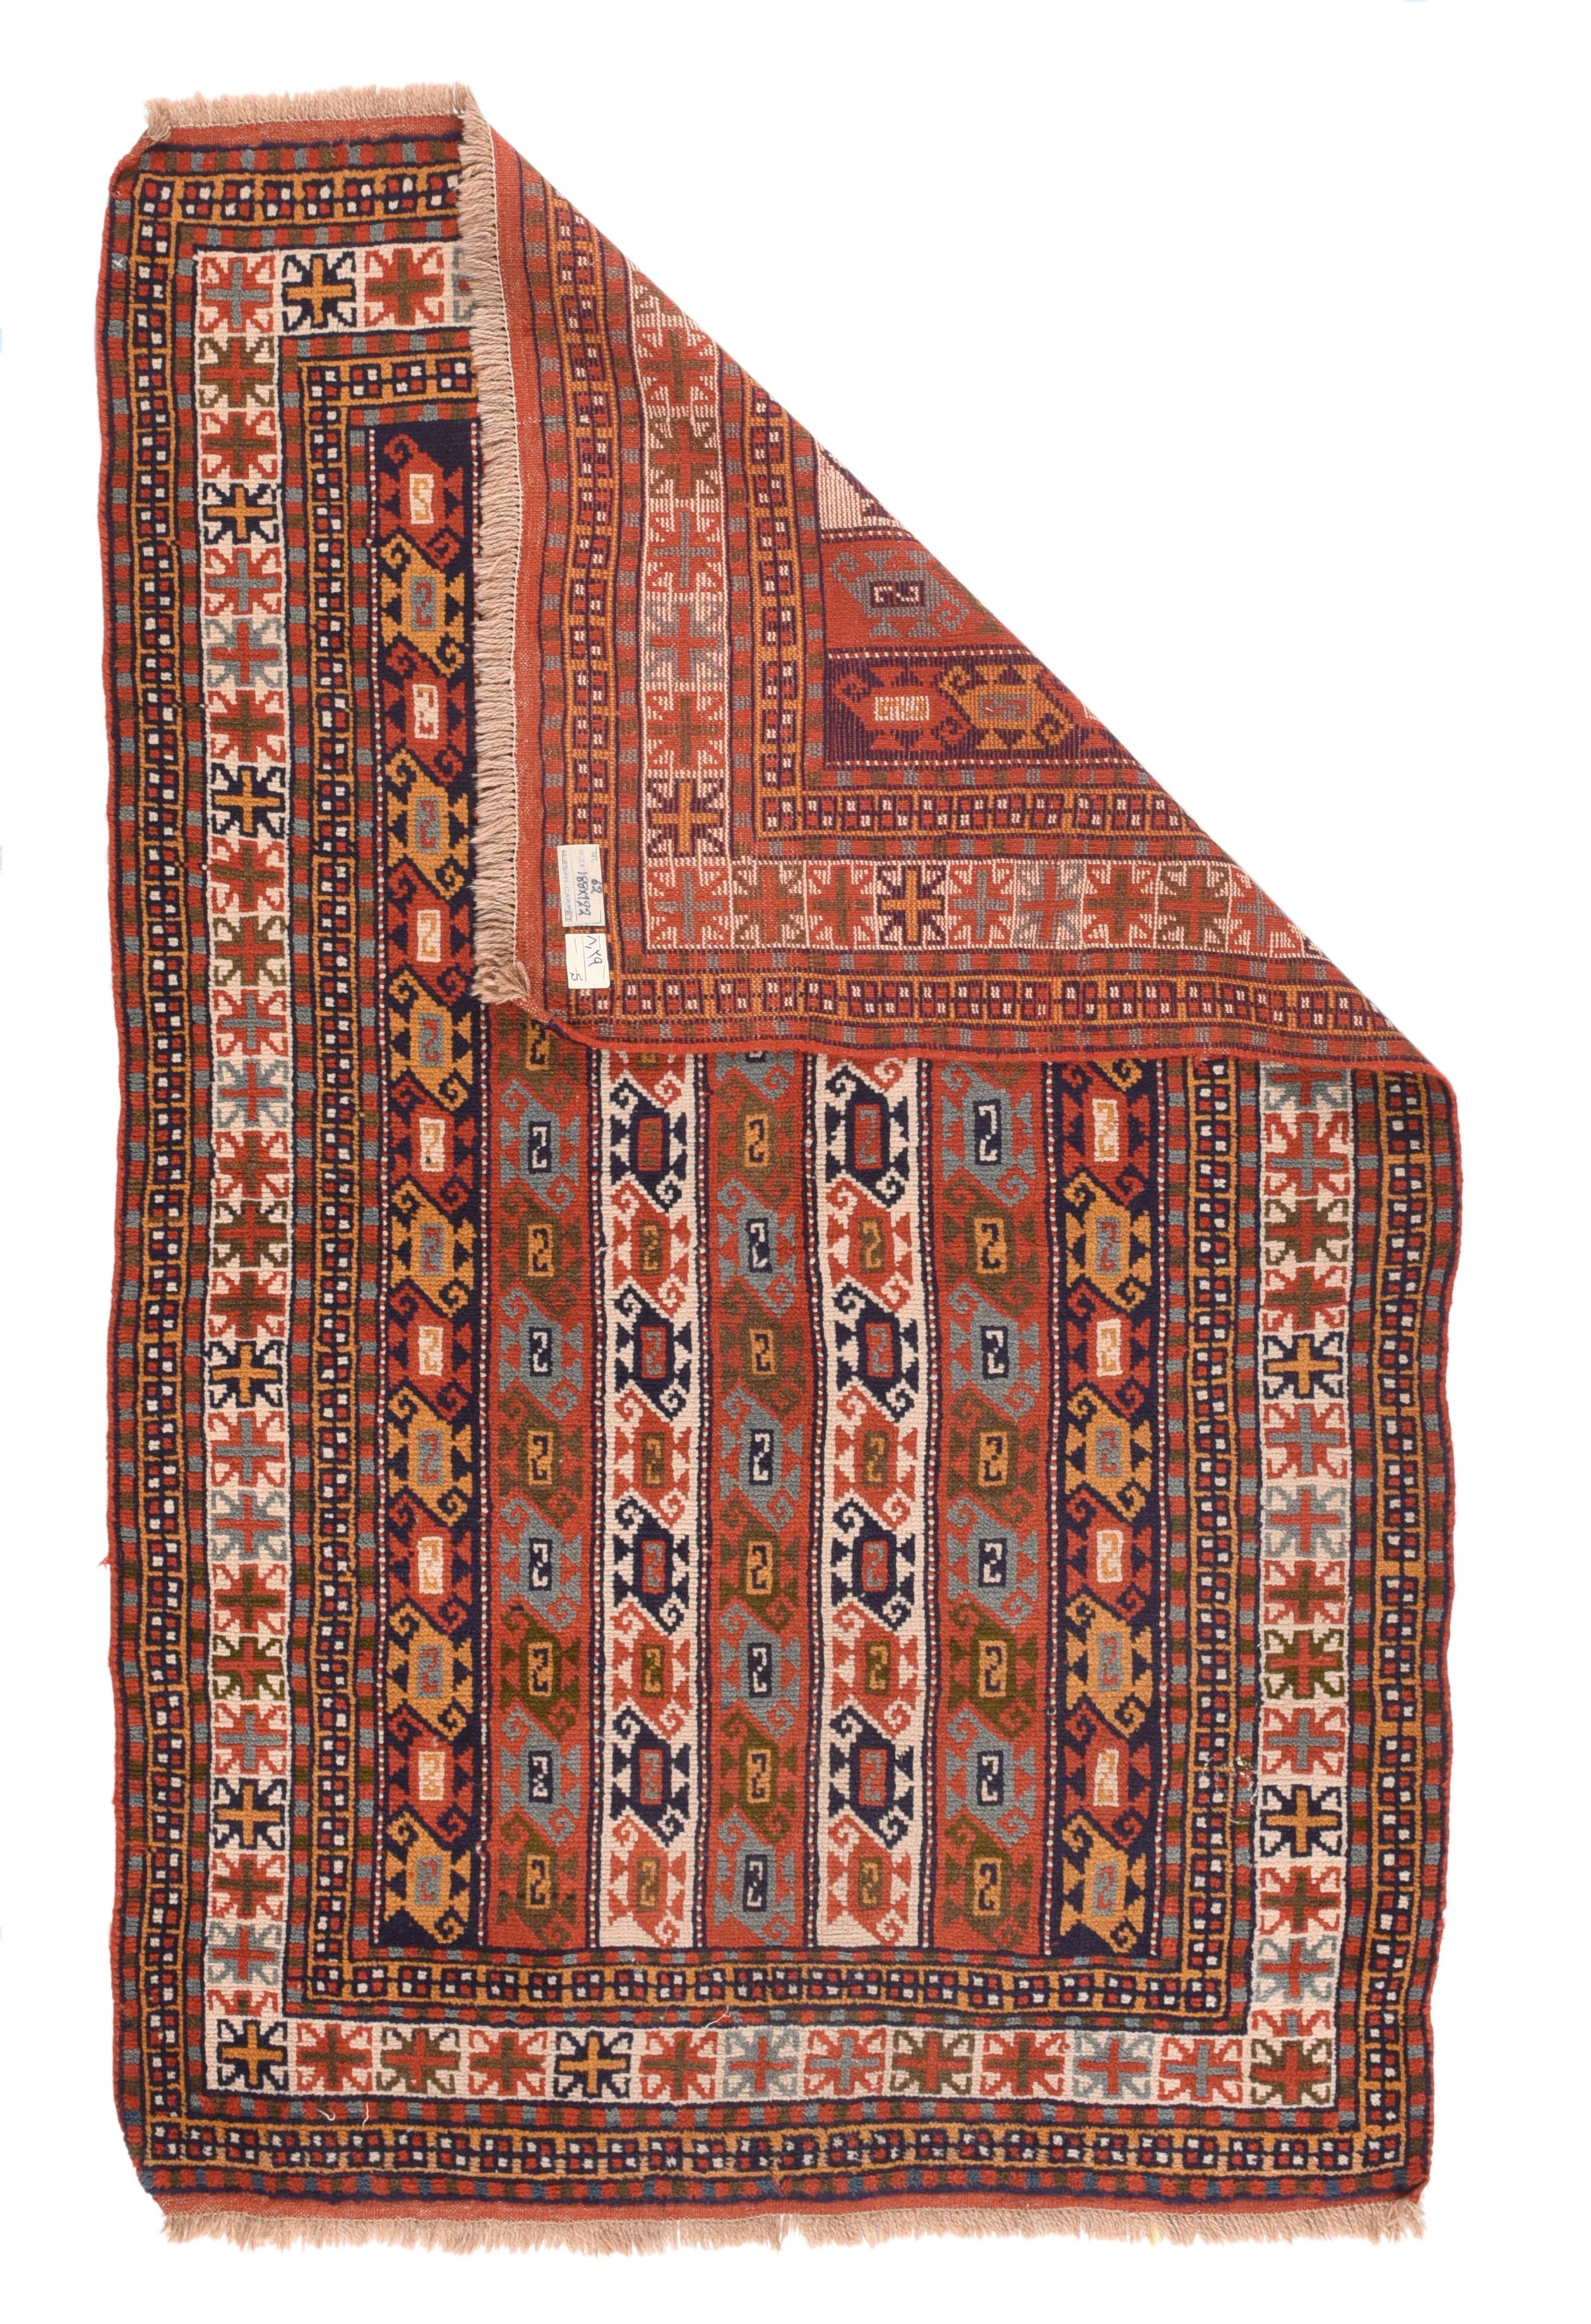 Vintage Kazak Teppich 4' x 6'3''. Kein Kazak, sondern von den Kurden in Nordost-Persien, mit ihrem ganz charakteristischen Grenzsystem, und mit einem vertikalen Streifenmuster in Rostrot, Marine und Creme mit S-förmigen Doppelendbotehs. Schmale